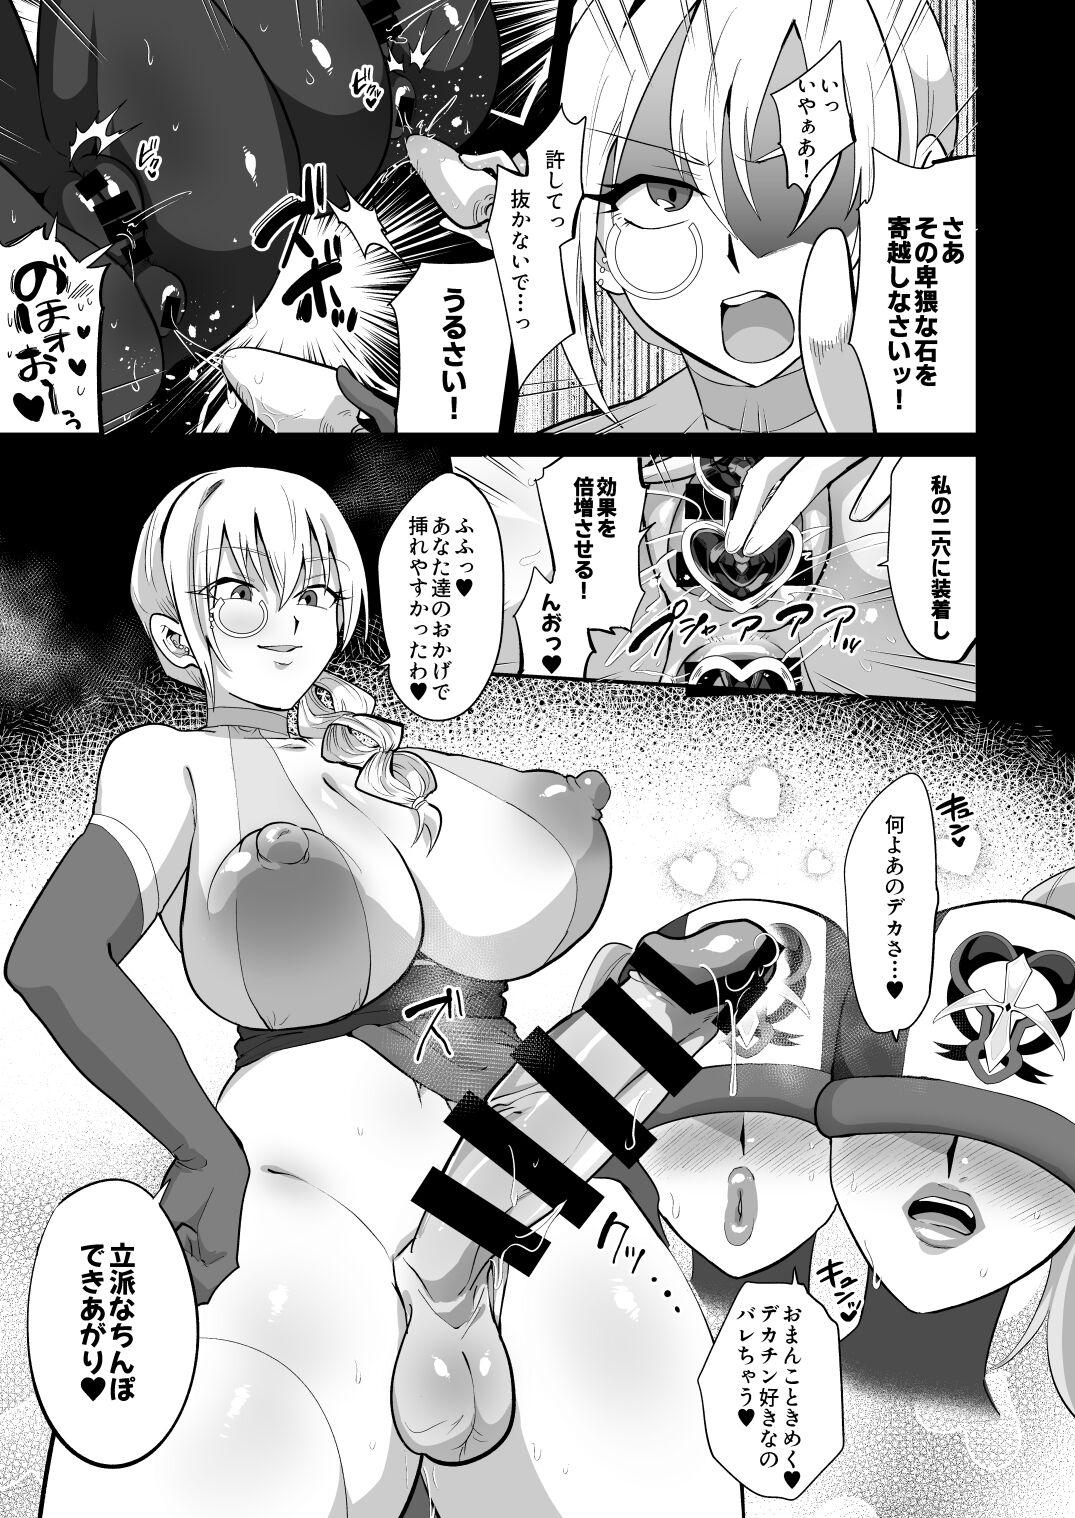 Magical Girl vs Futanari Combatant Sisters 17